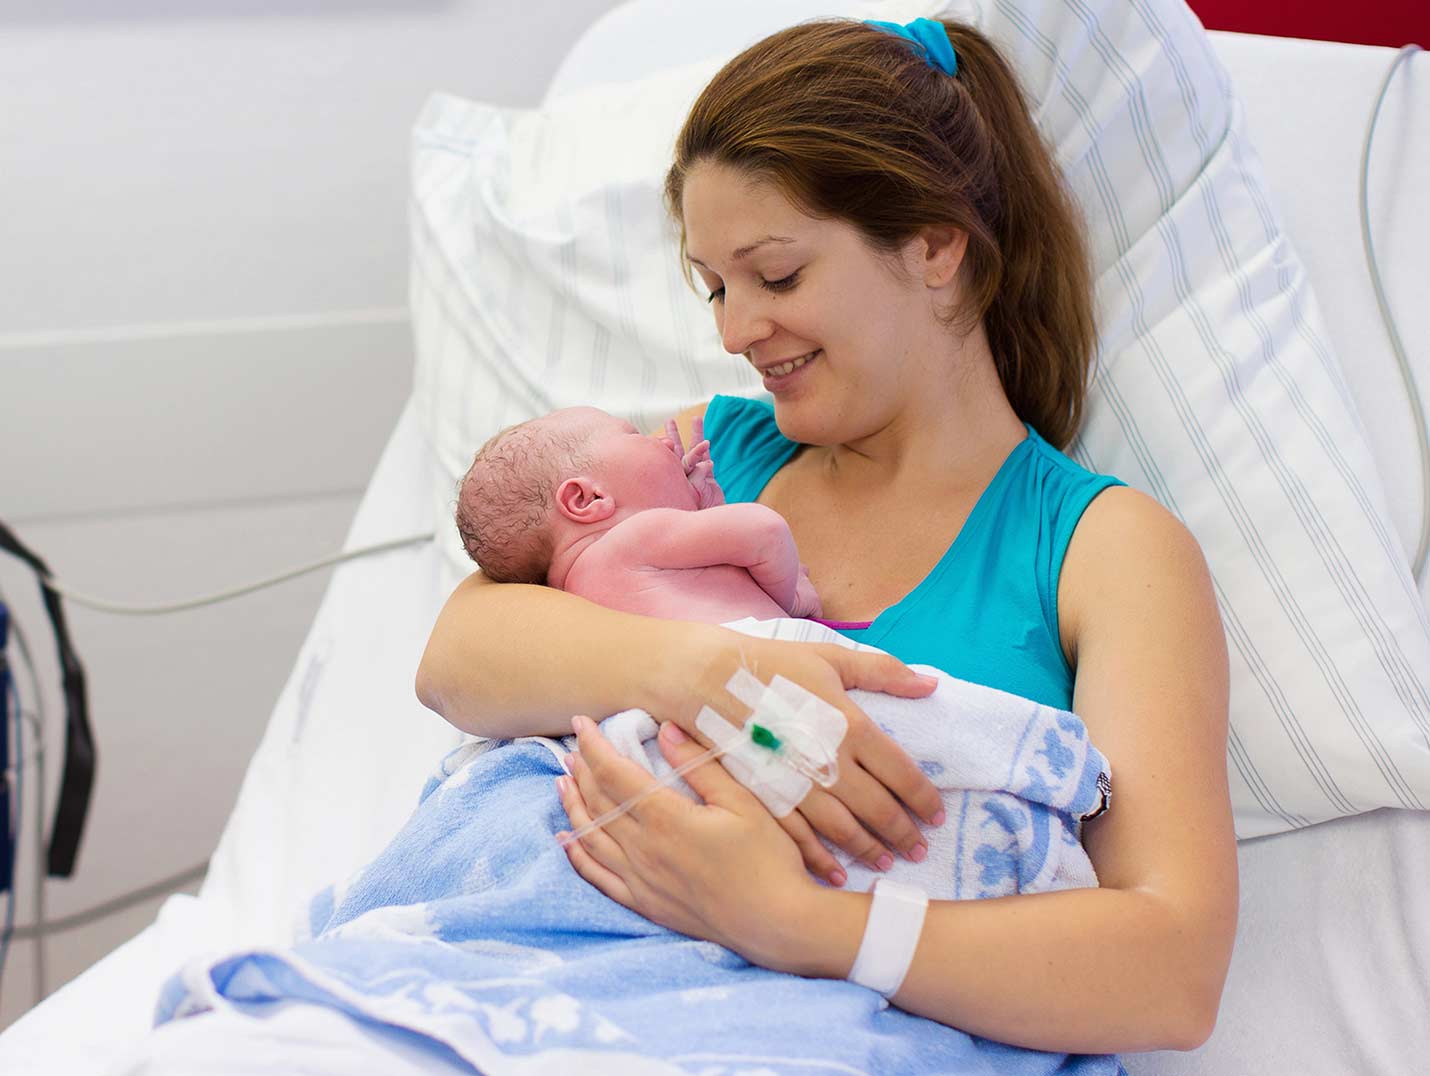 Una mamá recostada en una cama hospitalaria con un suero intravenoso puesto, cargando y mirando a su bebé recién nacido